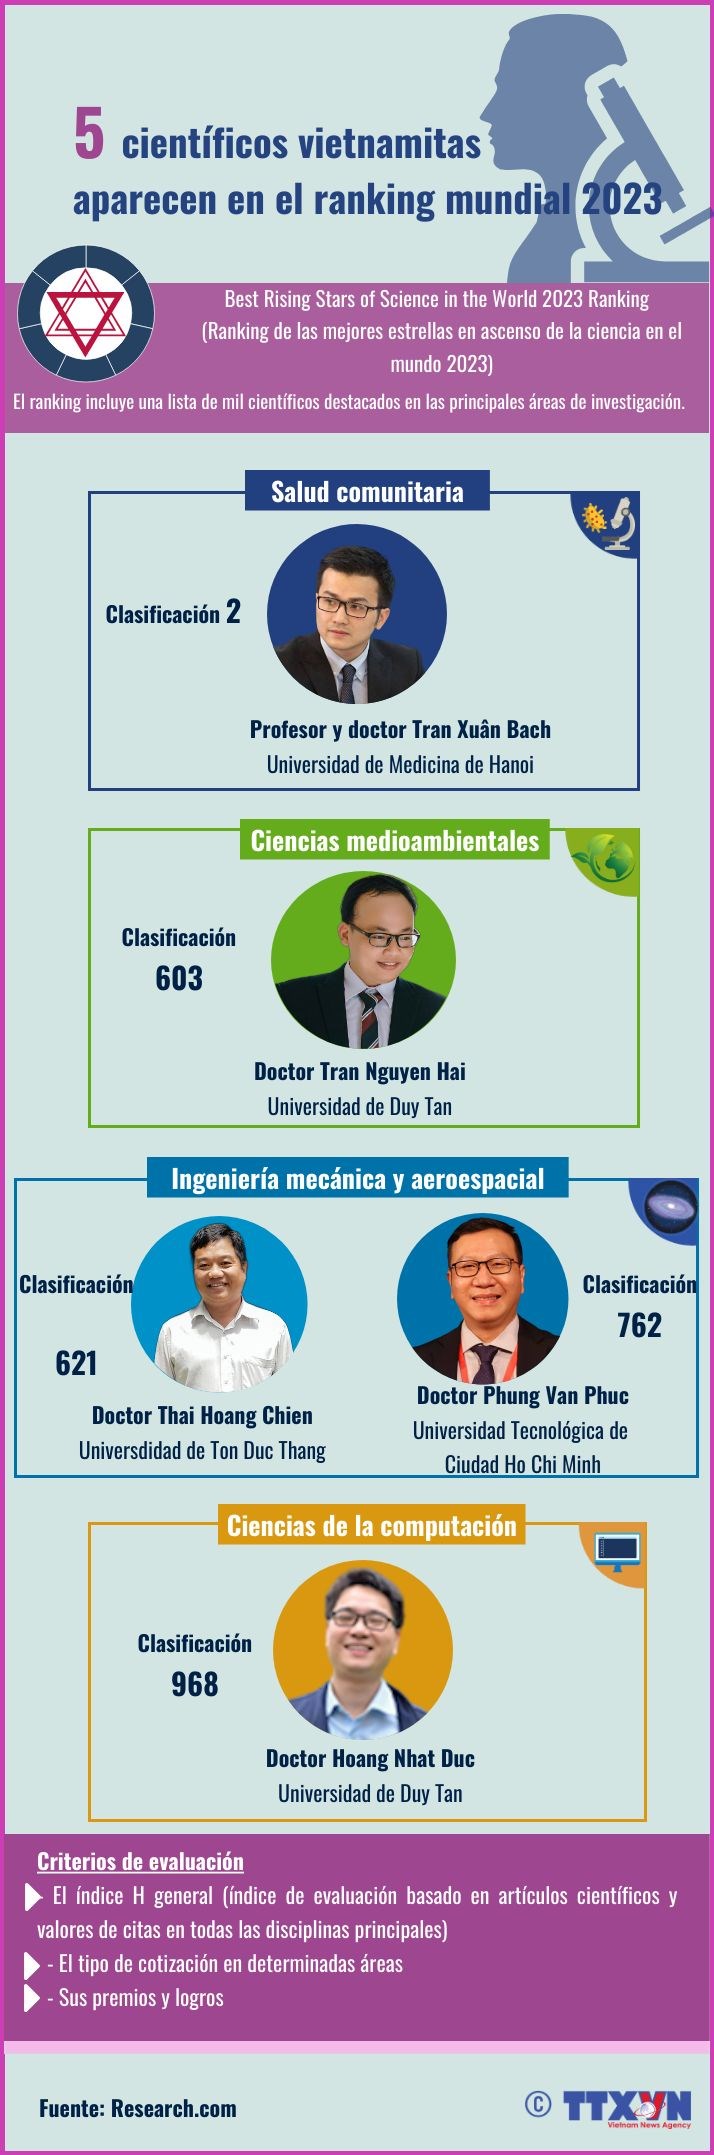 5 cientificos vietnamitas aparecen en el ranking mundial 2023 hinh anh 1